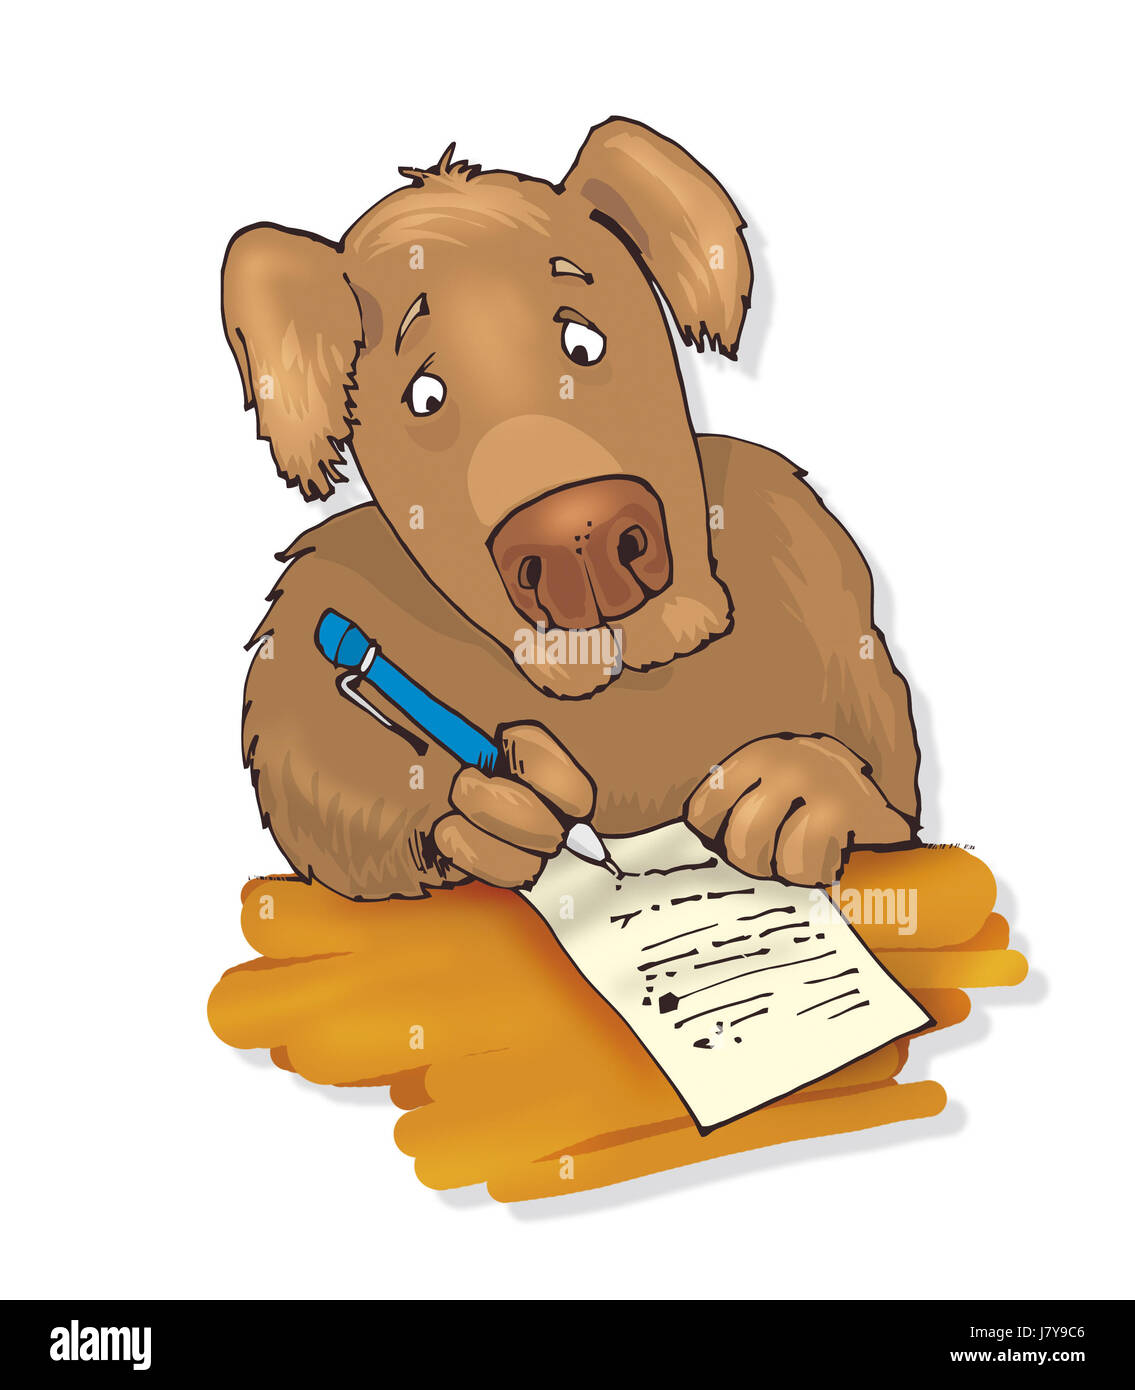 Schreiben Schrieb Dass Schreiben Hund Abbildung Gedicht Brief Cartoon Zottigen Schreibt Stockfotografie Alamy